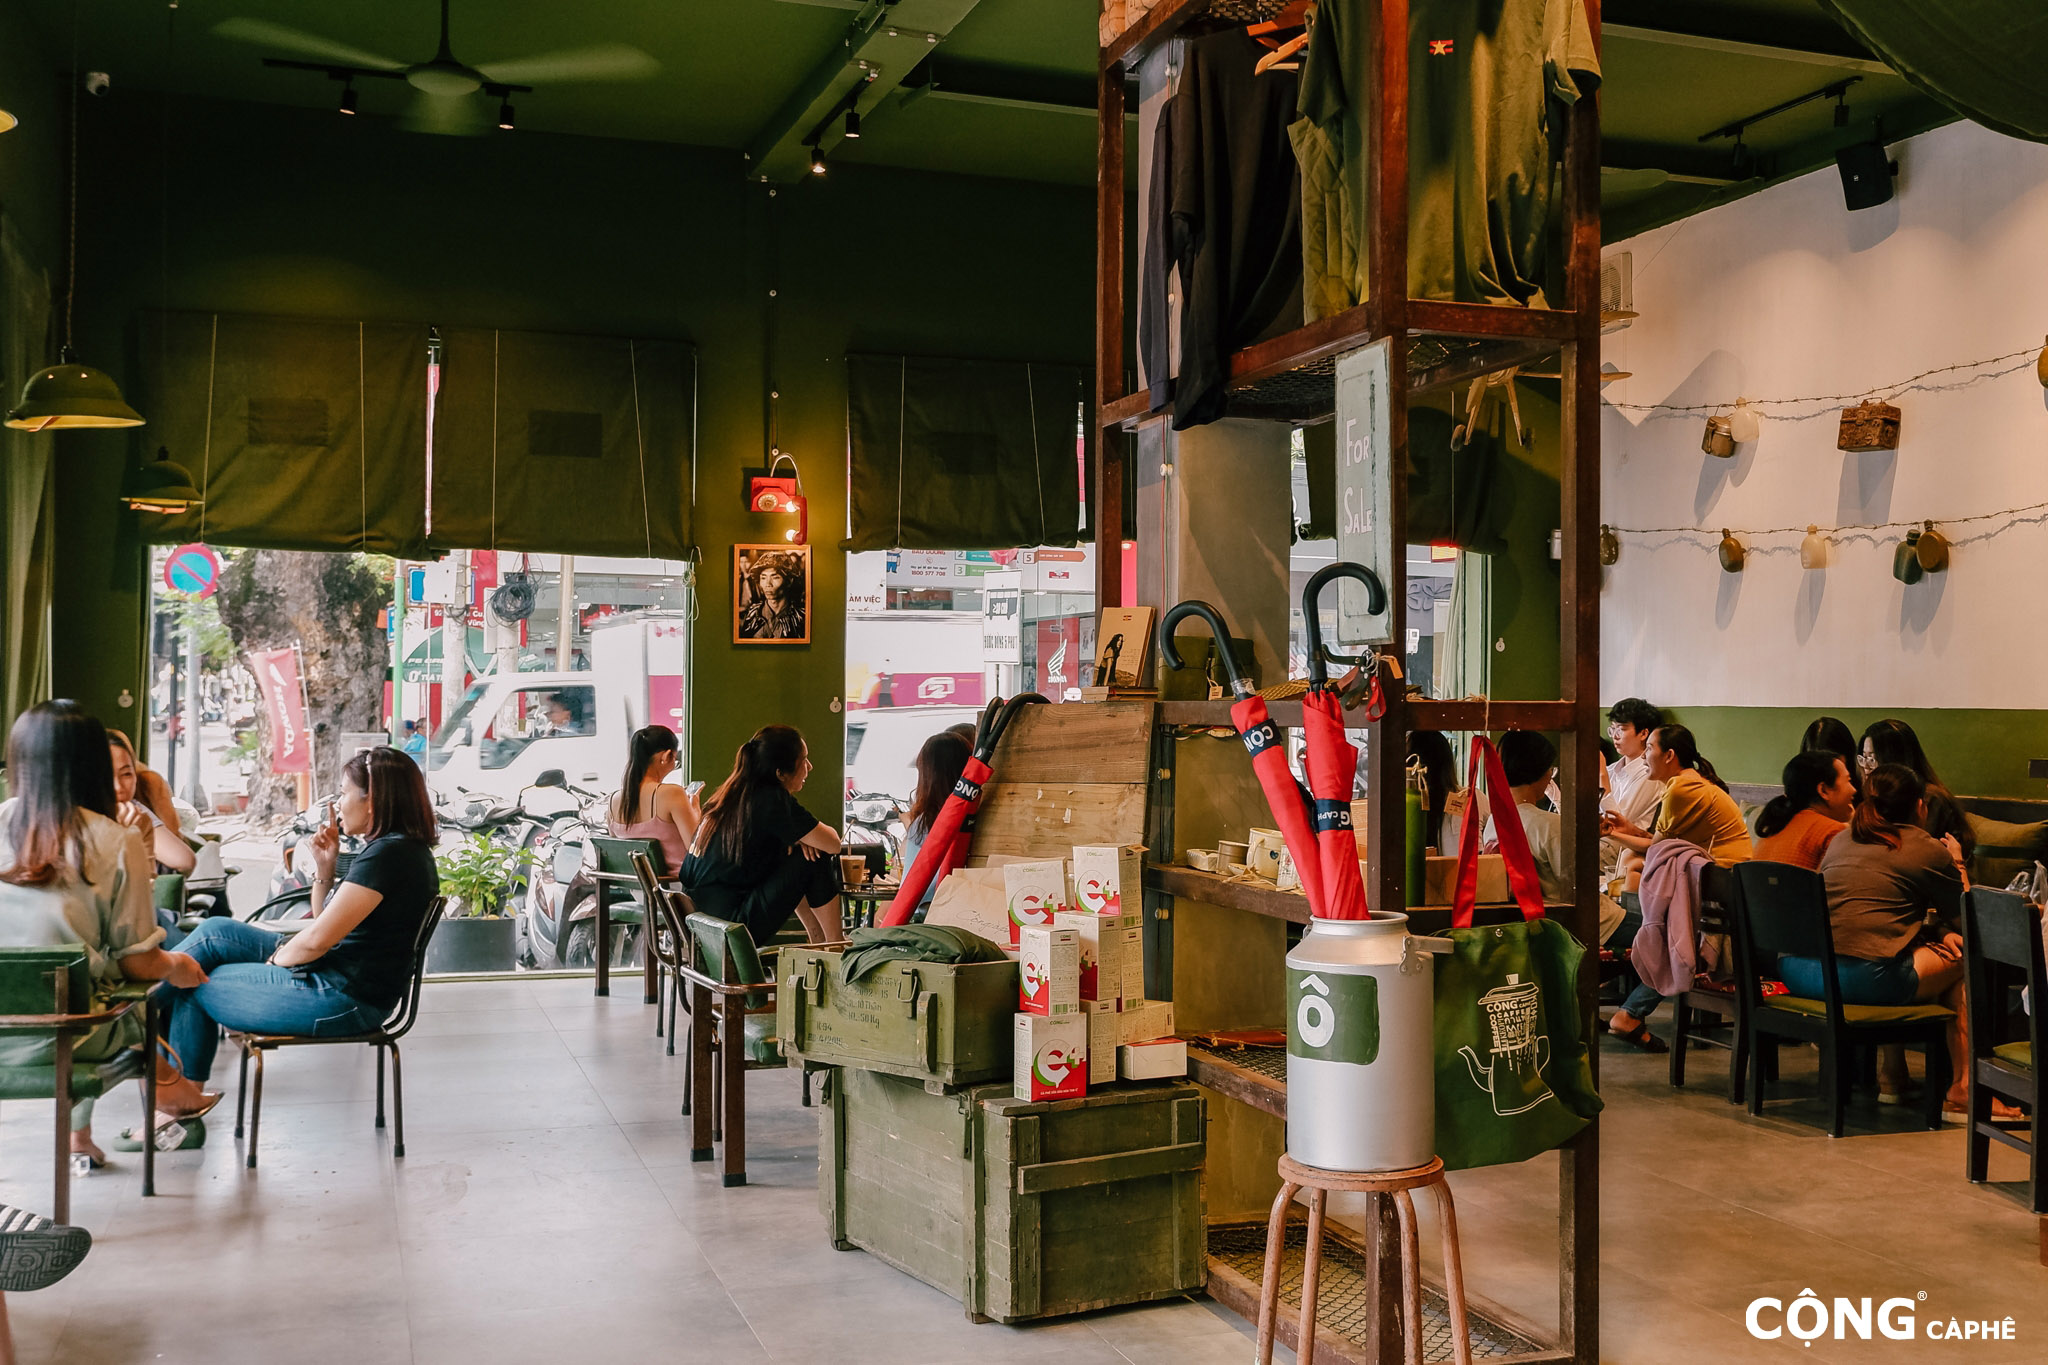 cong cafe nguyen van huyen 3 - Thiết kế Cafe Cộng - Không gian lý tưởng cho những người hoài niệm